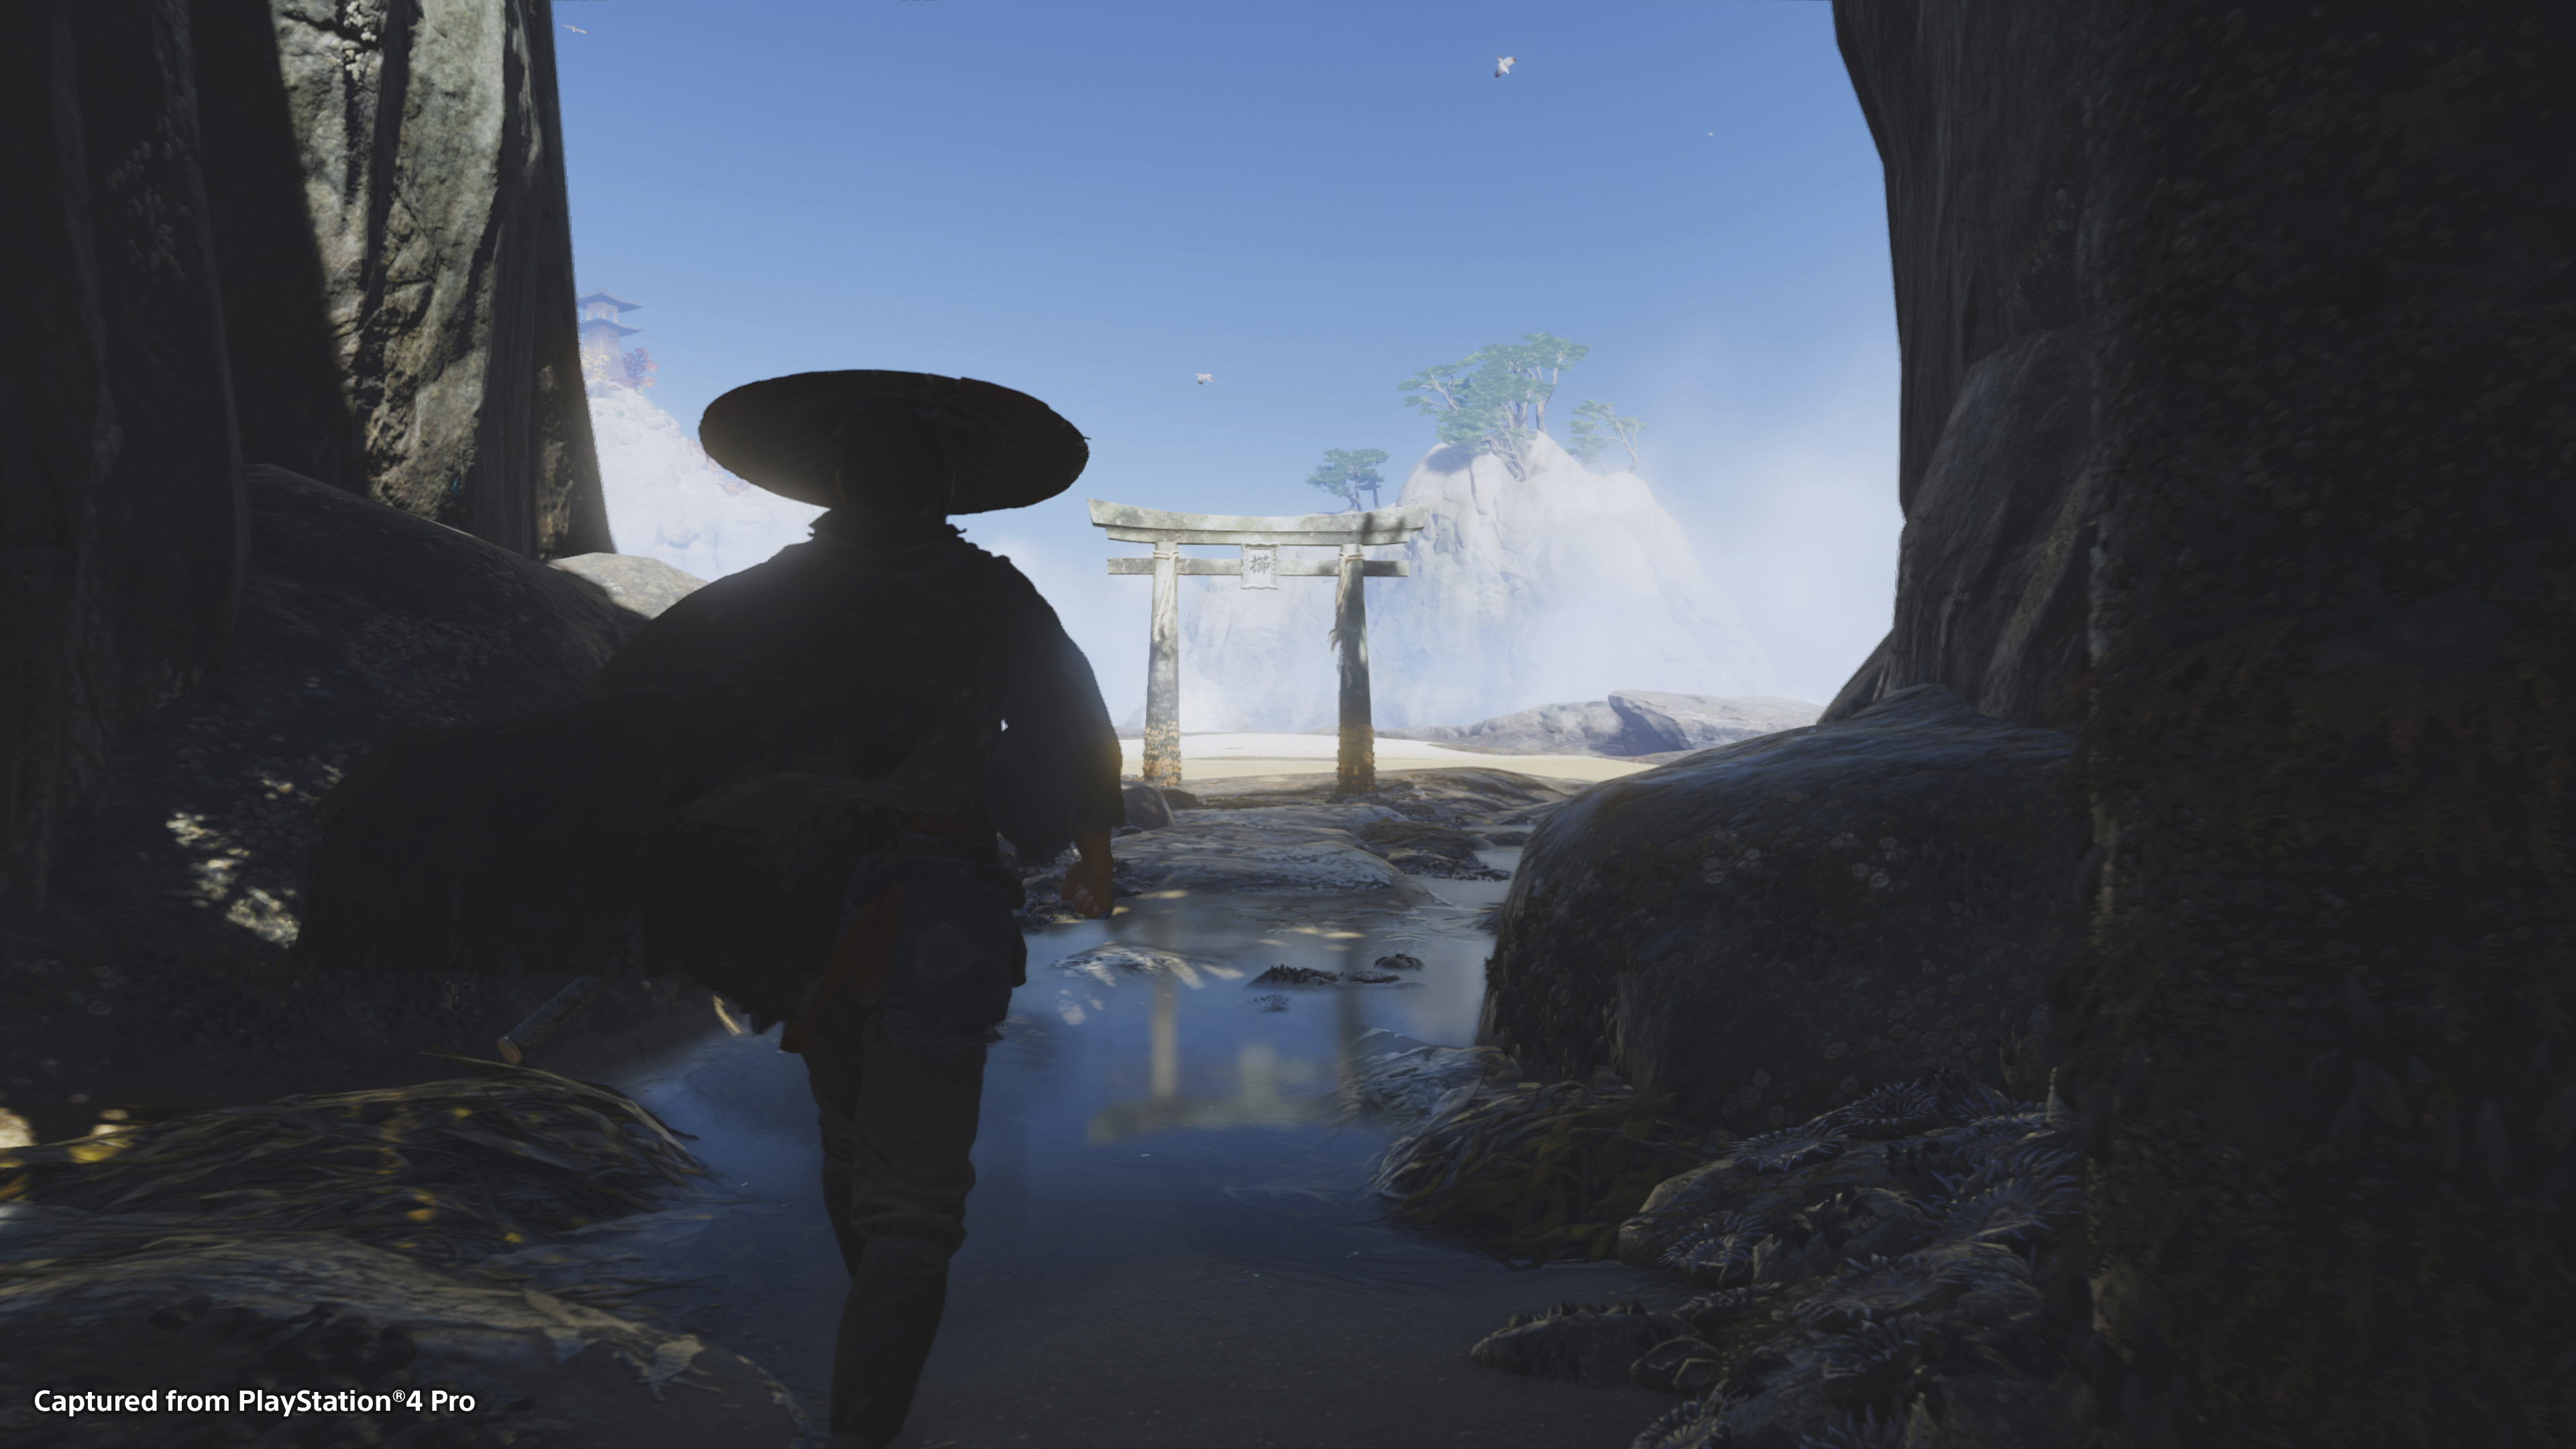 Gameplayscreenshot van Ghost of Tsushima met daarop het hoofdpersonage Jin Sakai tegen een heldere blauwe lucht.